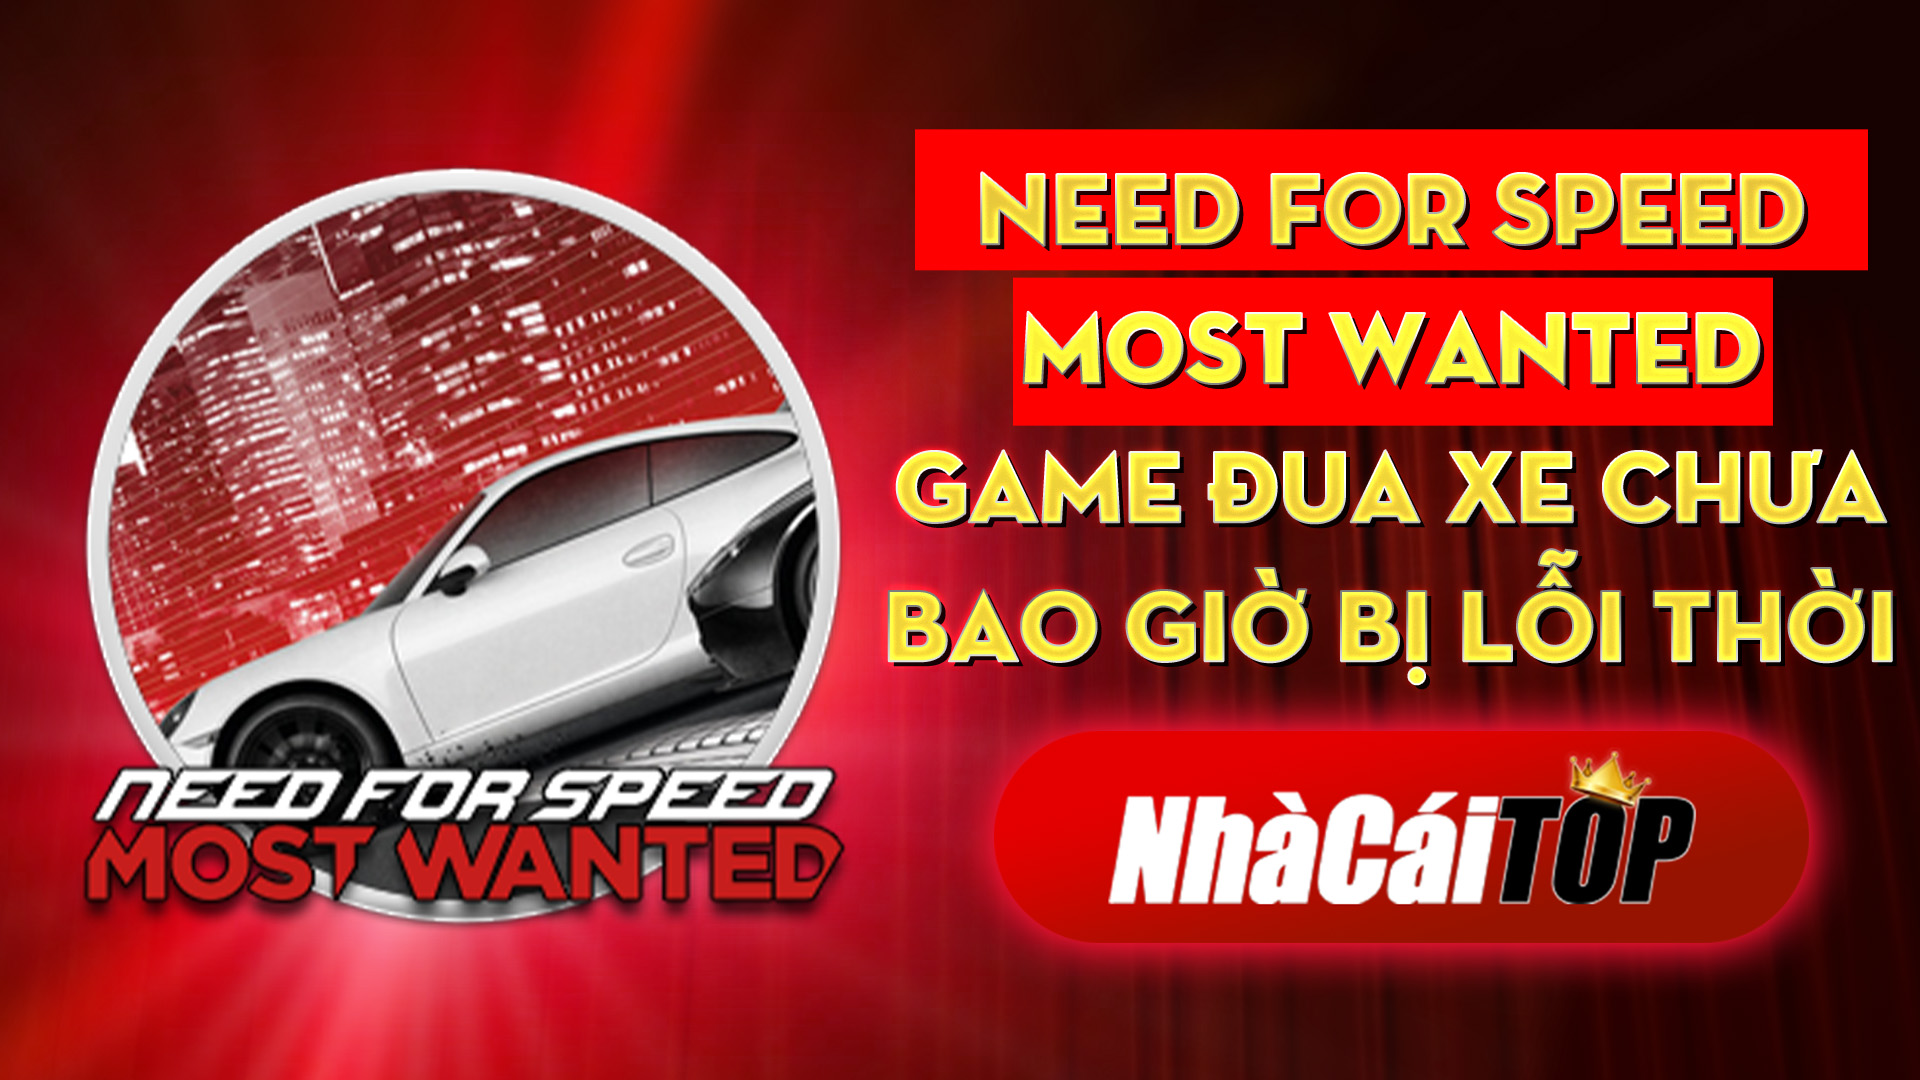 326 Need For Speed Most Wanted – Game Djua Xe Chua Bao Gio Bi Loi Thoi